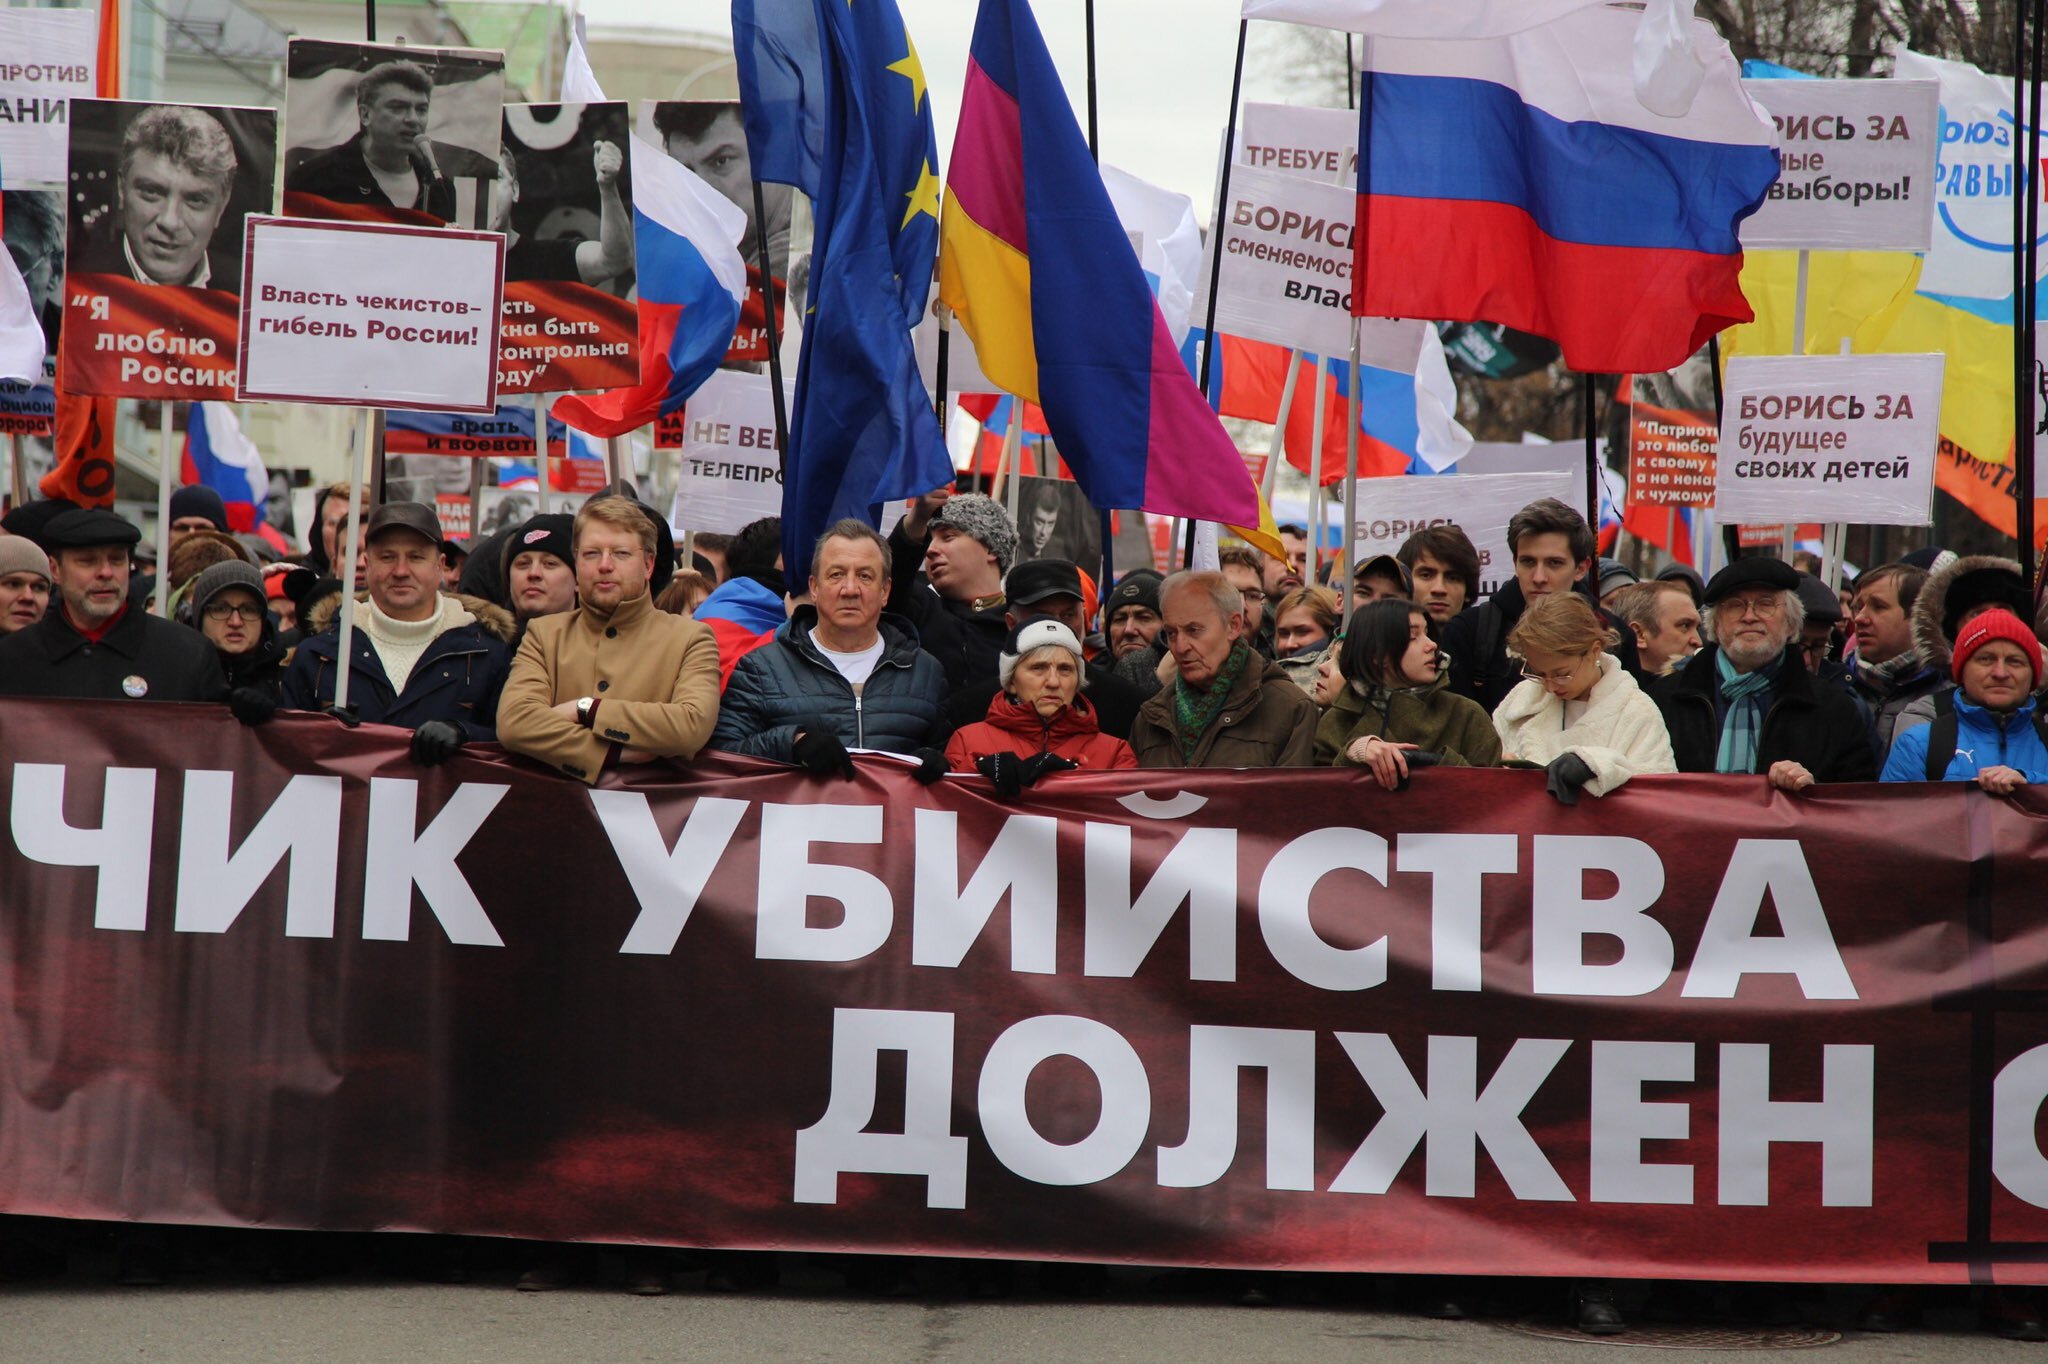 марш, памяти, немцов, москва, шествие, флаги, украина, фото 